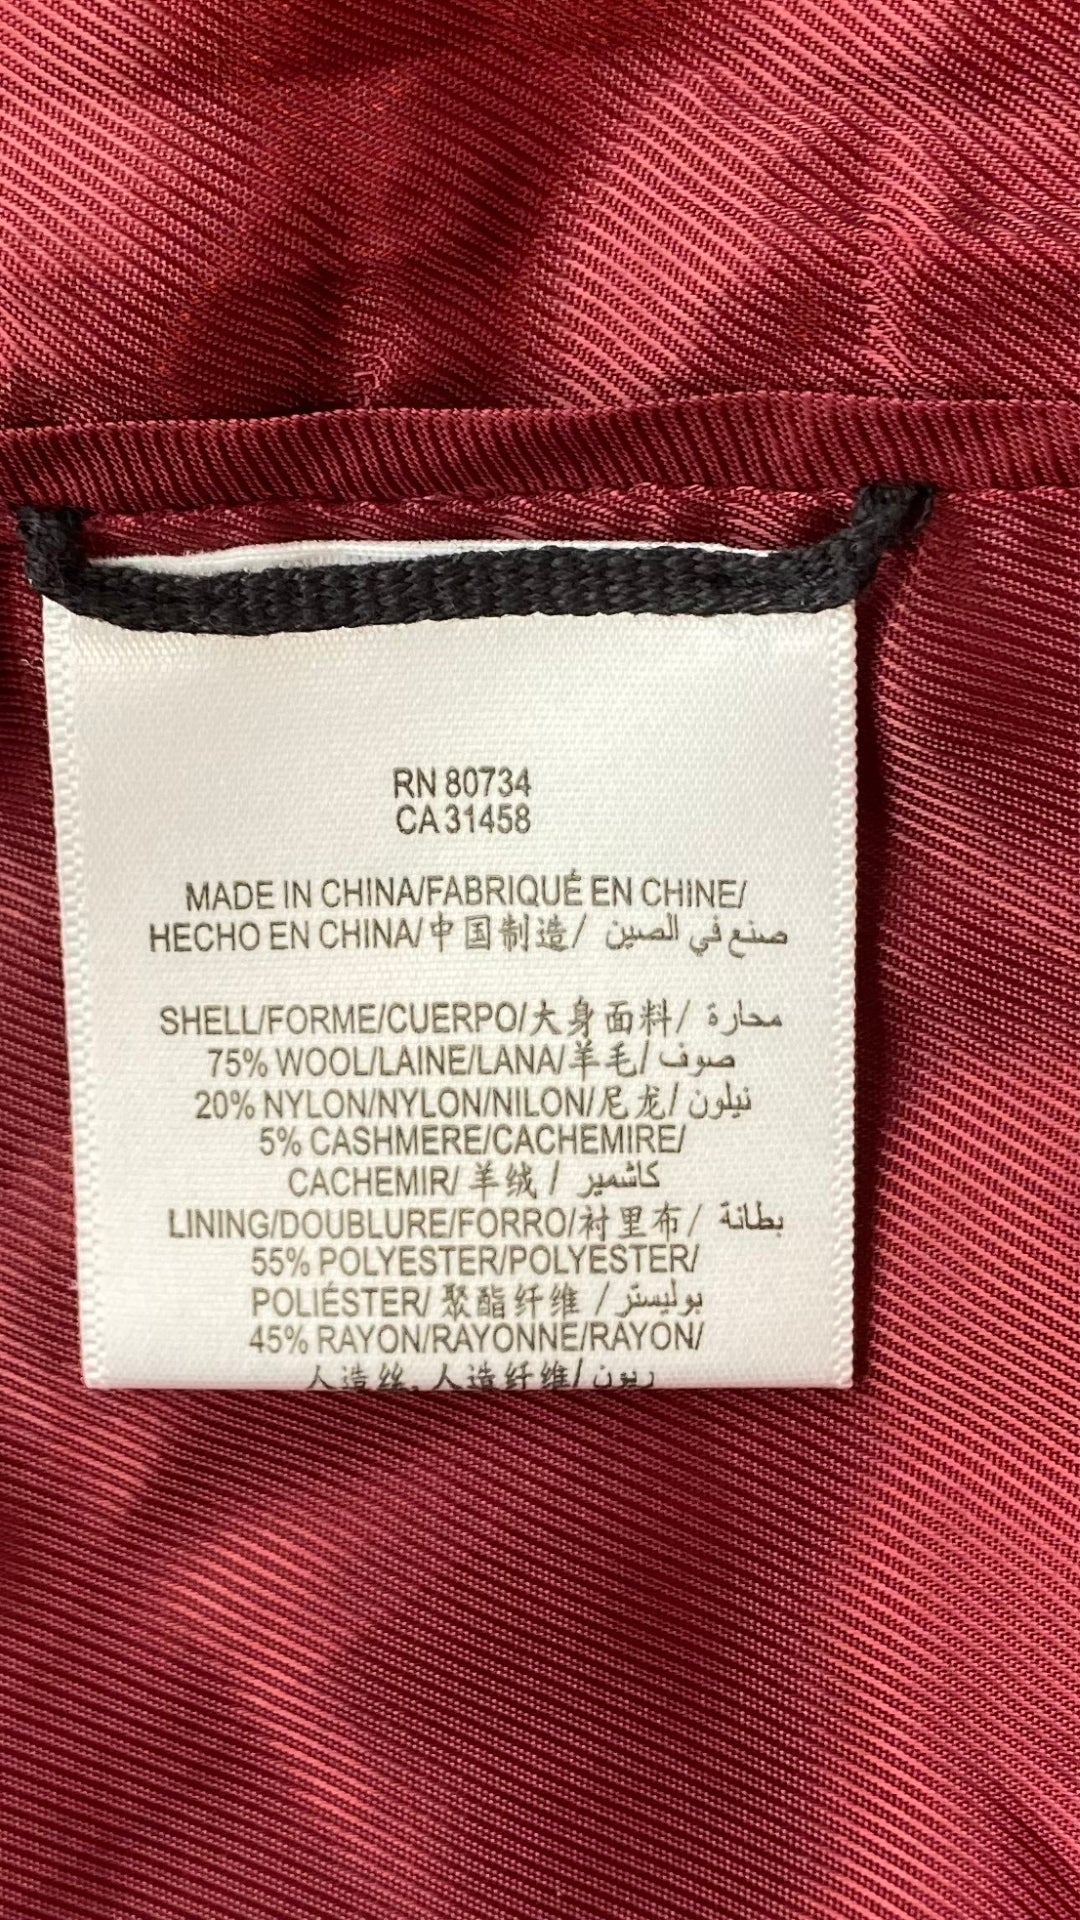 Manteau assez long en lainage rouge, manches ballons, BCBGMAXAZRIA, vue de l'étiquette de composition.